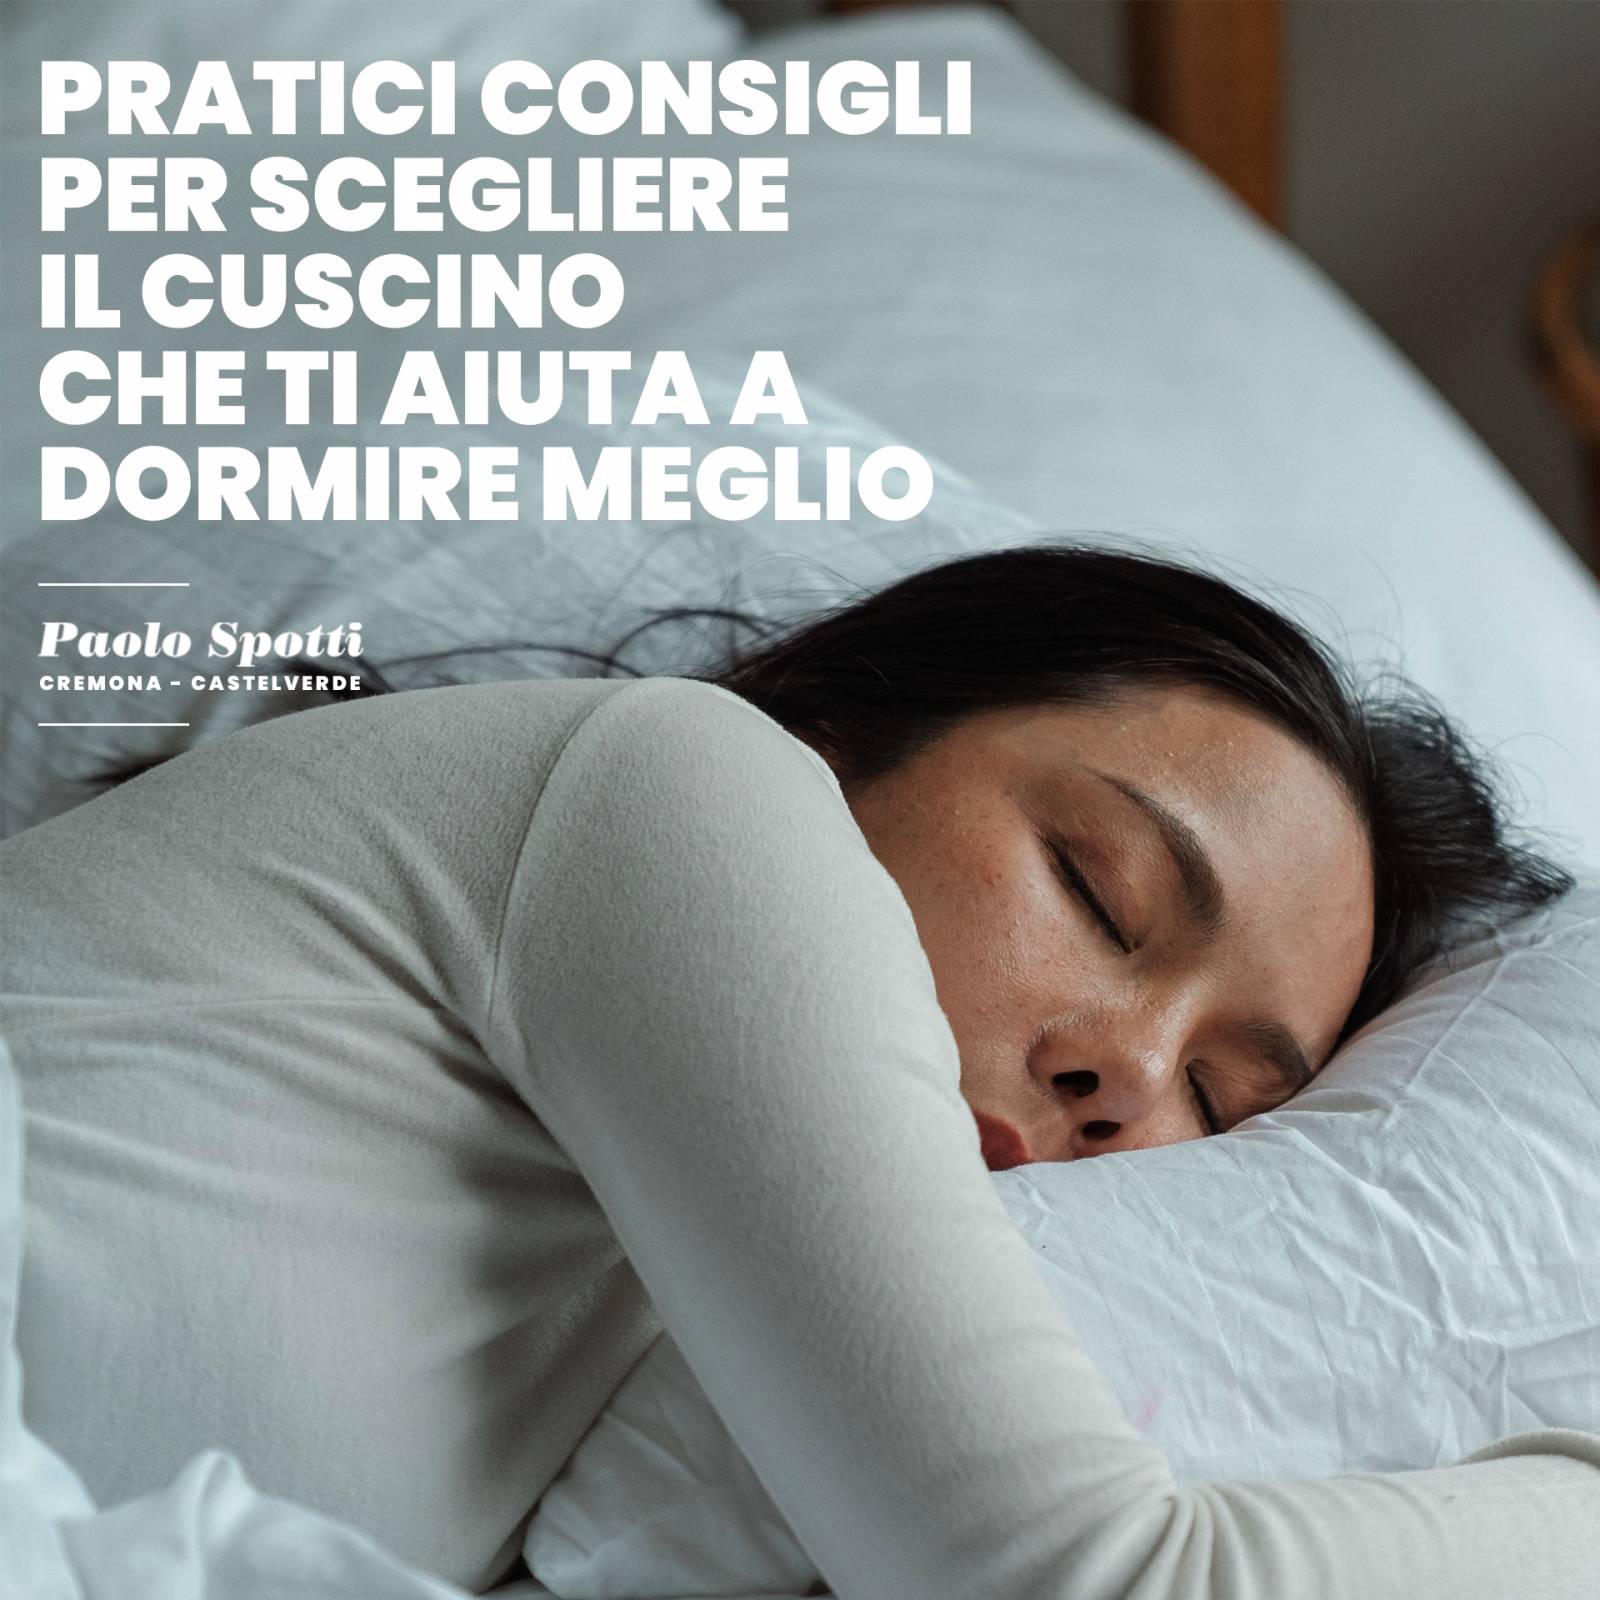 Pratici consigli per scegliere il cuscino che ti aiuta a dormire meglio -  Paolo Spotti - Cremona